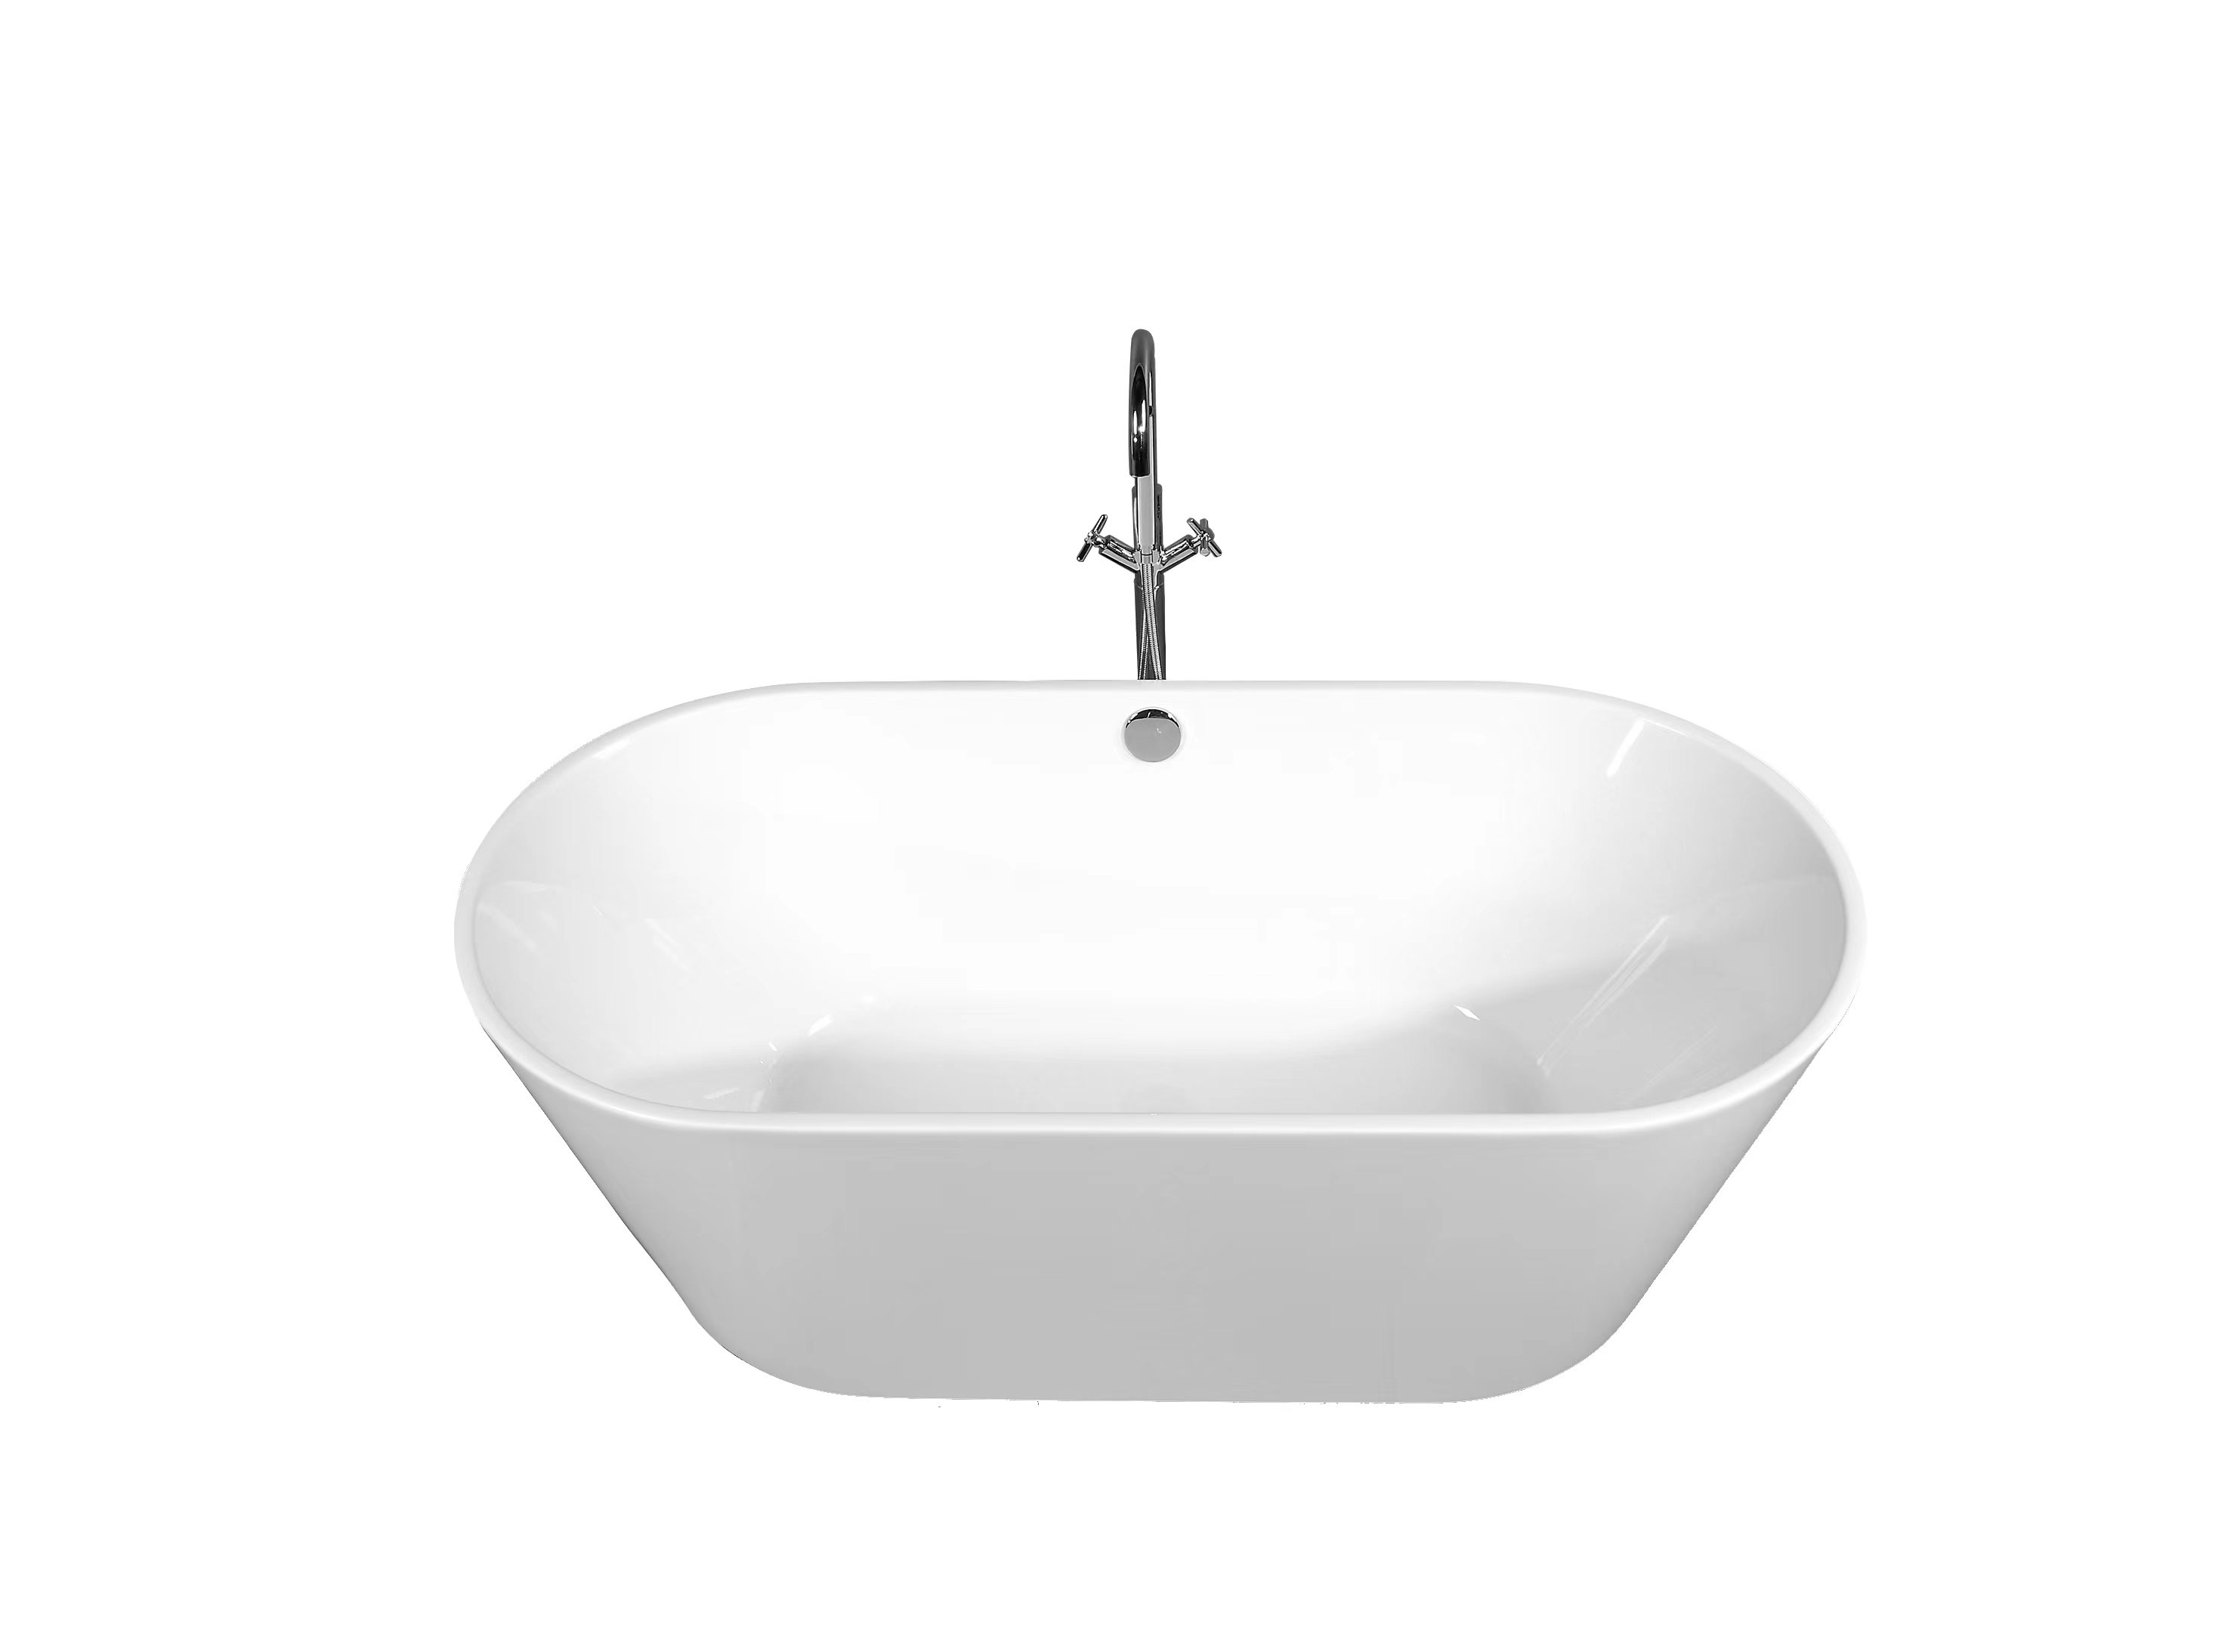 Duko-Acrylic freestanding bathtub-SKYSEA 59"